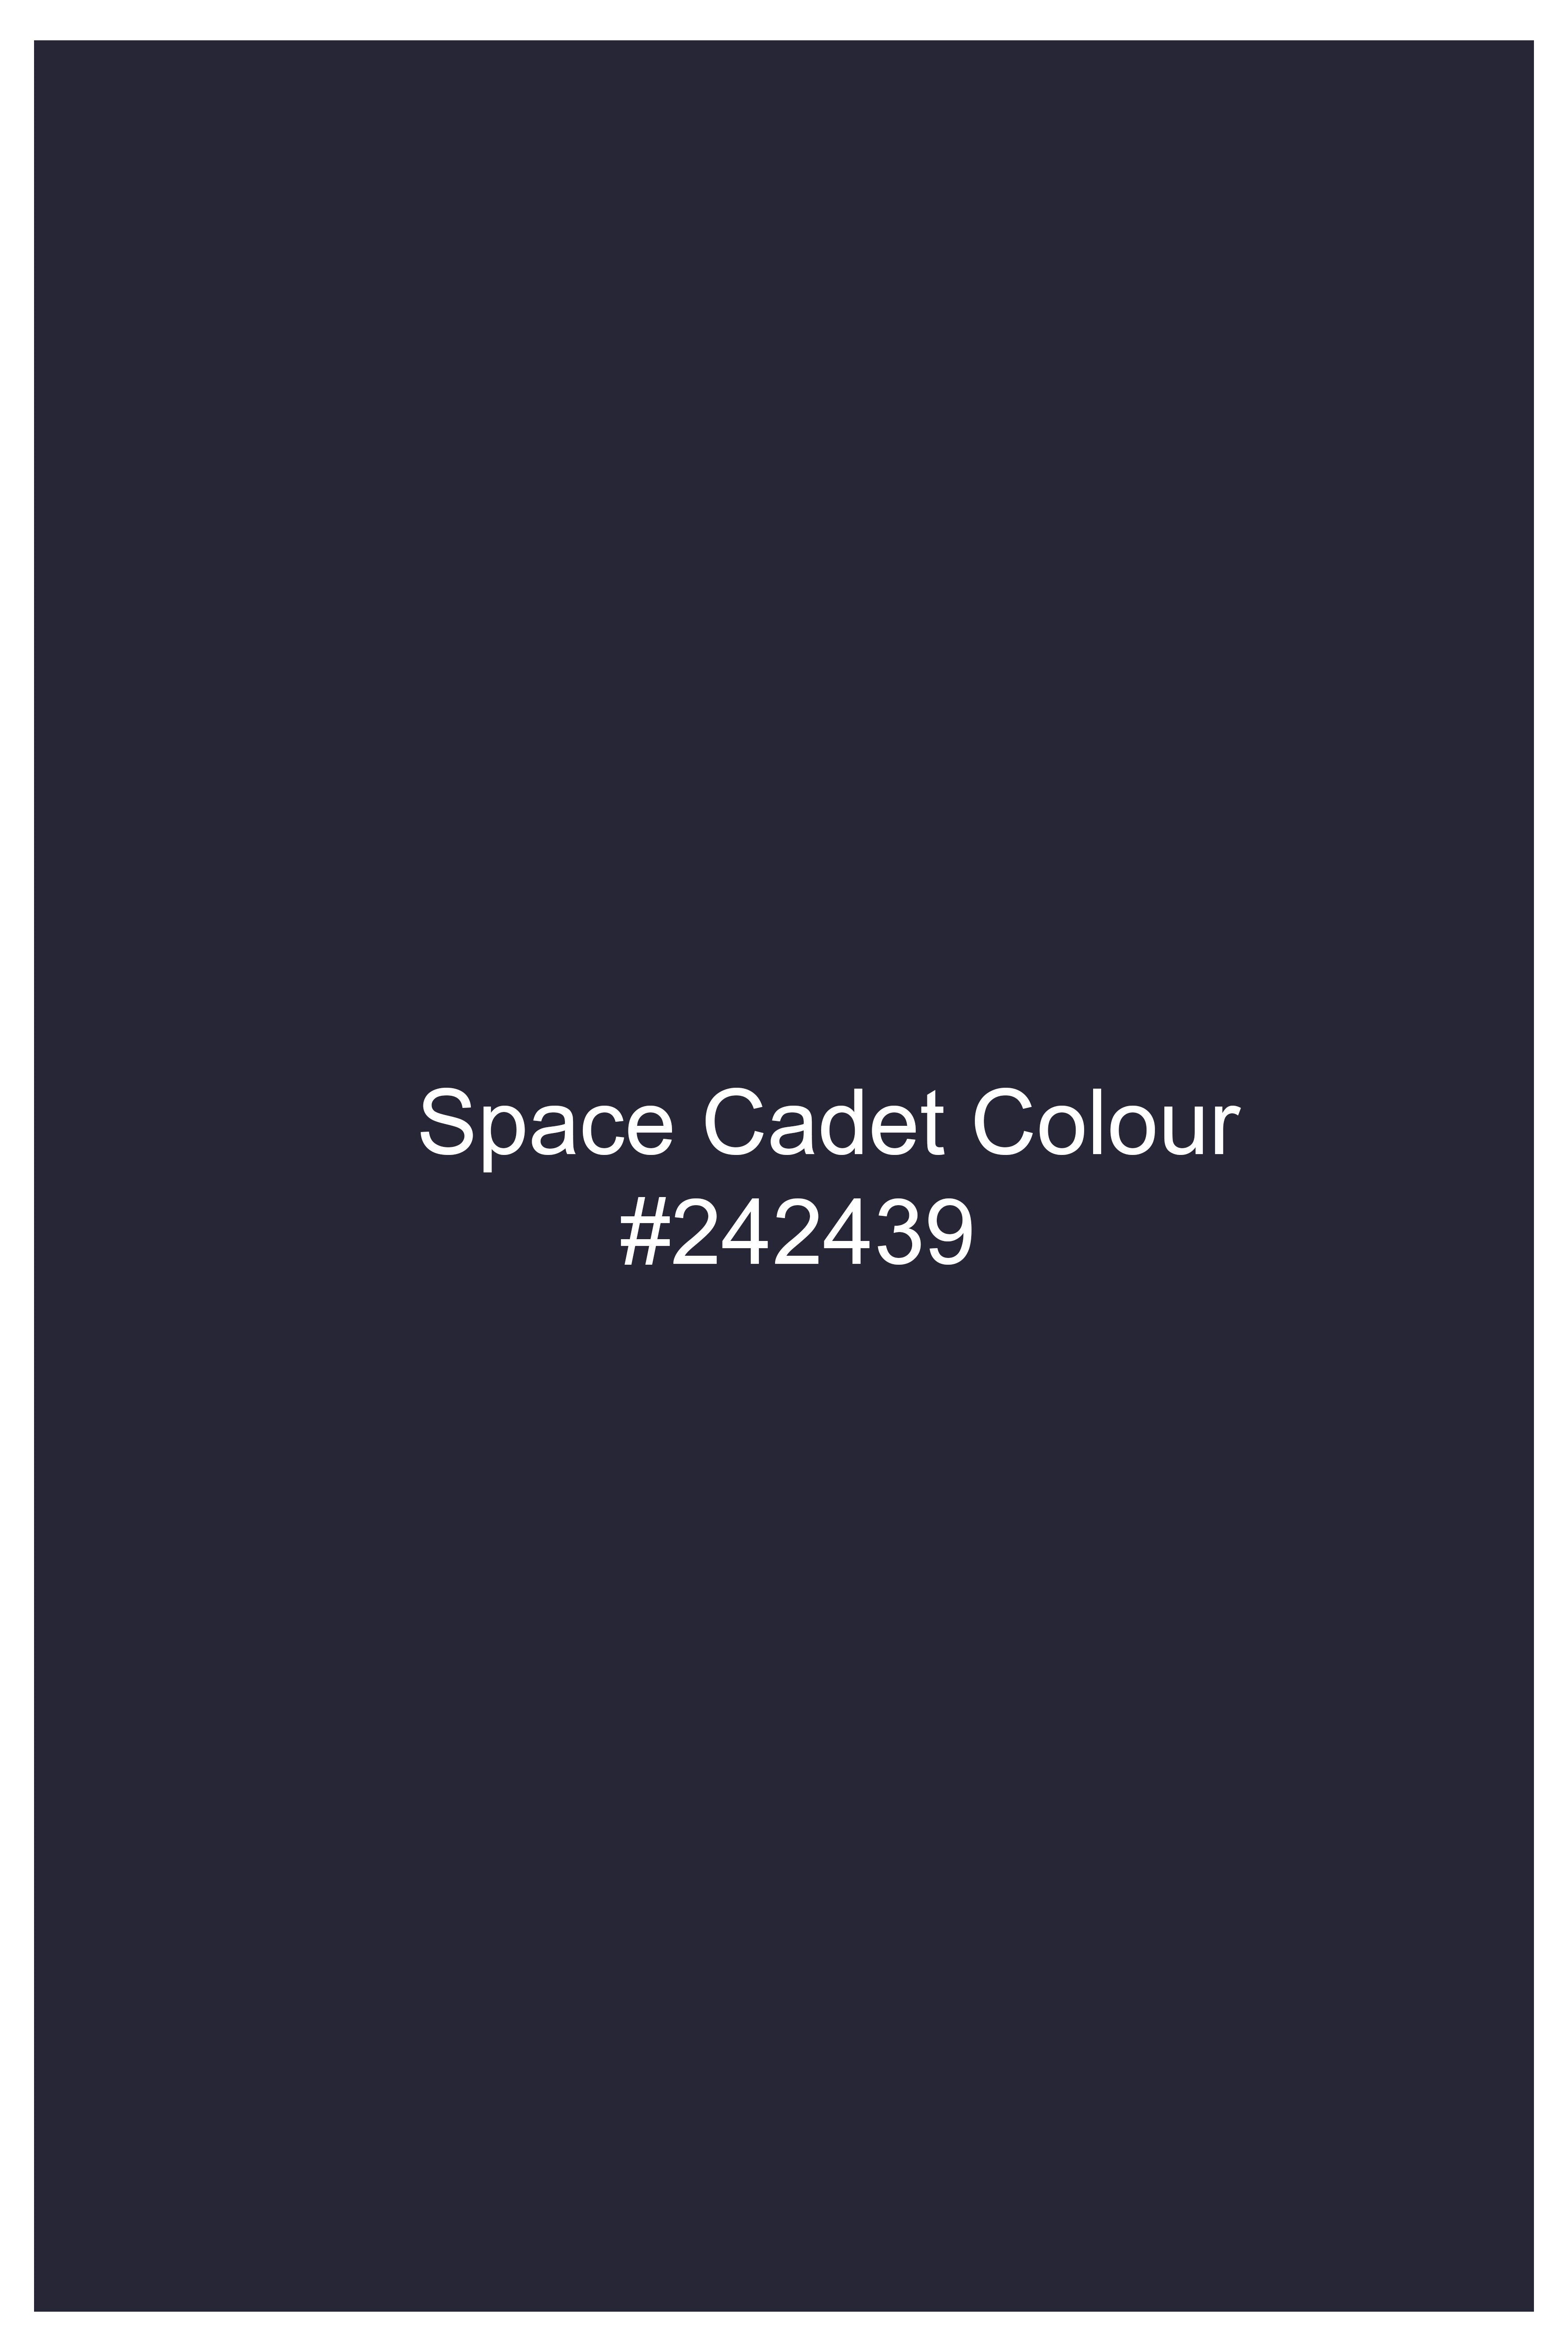 Space Cadet Blue Wool Rich Designer Suit ST3015-D188-36, ST3015-D188-38, ST3015-D188-40, ST3015-D188-42, ST3015-D188-44, ST3015-D188-46, ST3015-D188-48, ST3015-D188-50, ST3015-D188-52, ST3015-D188-54, ST3015-D188-56, ST3015-D188-58, ST3015-D188-60